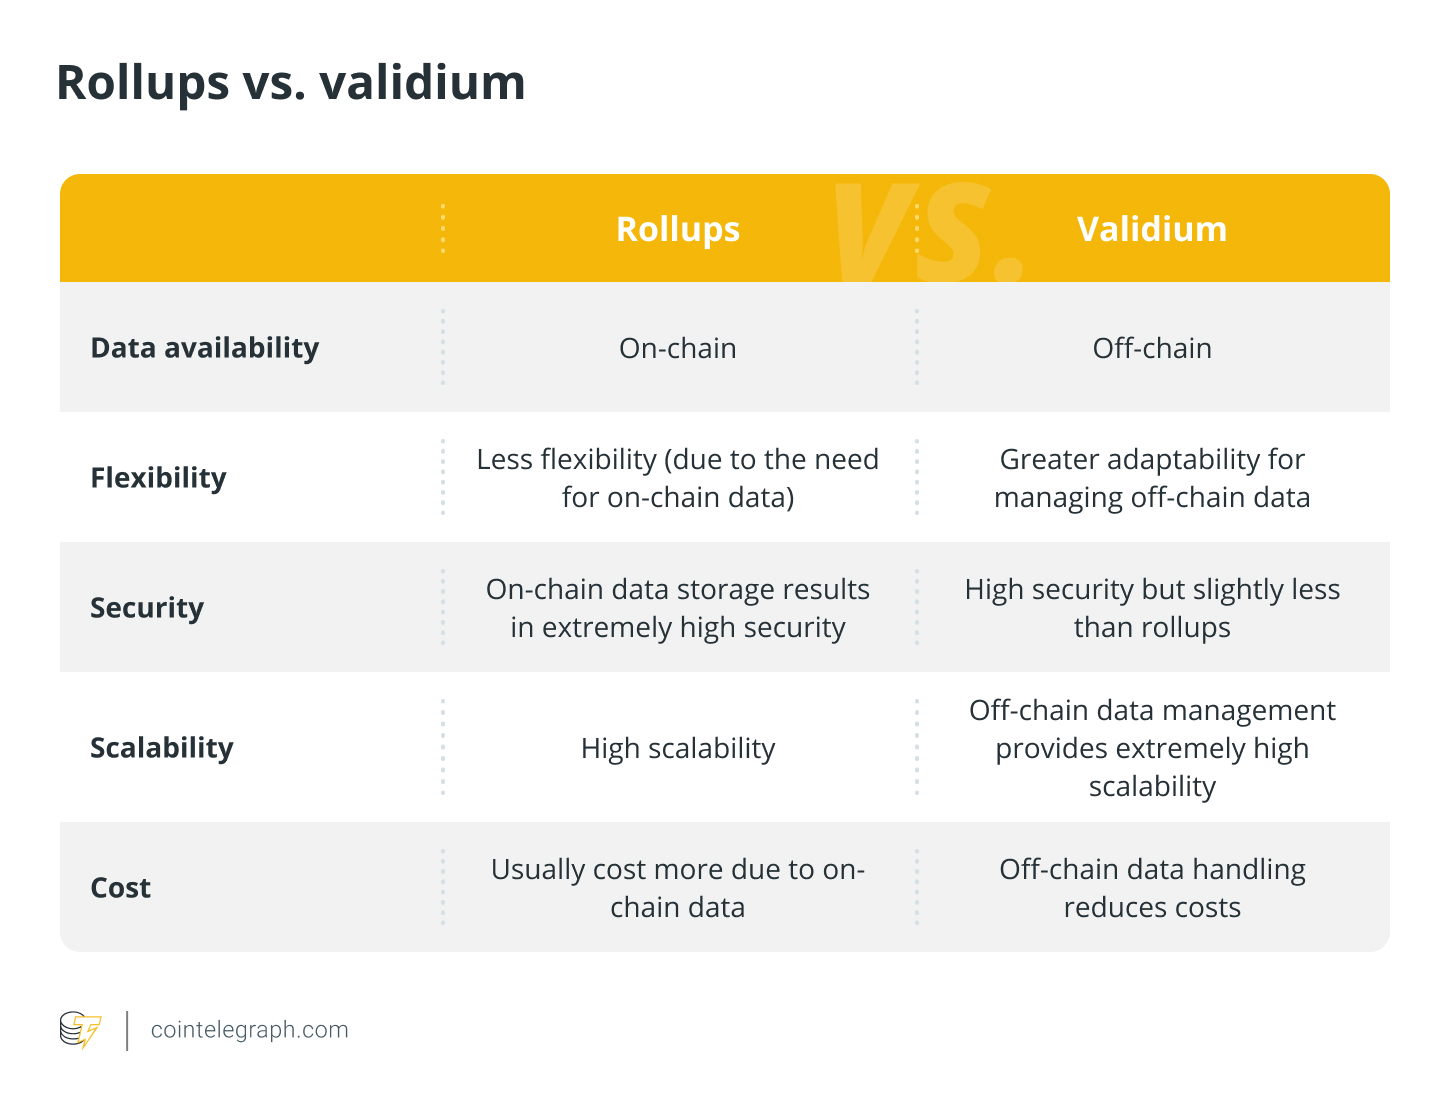 Cumulative vs Validium